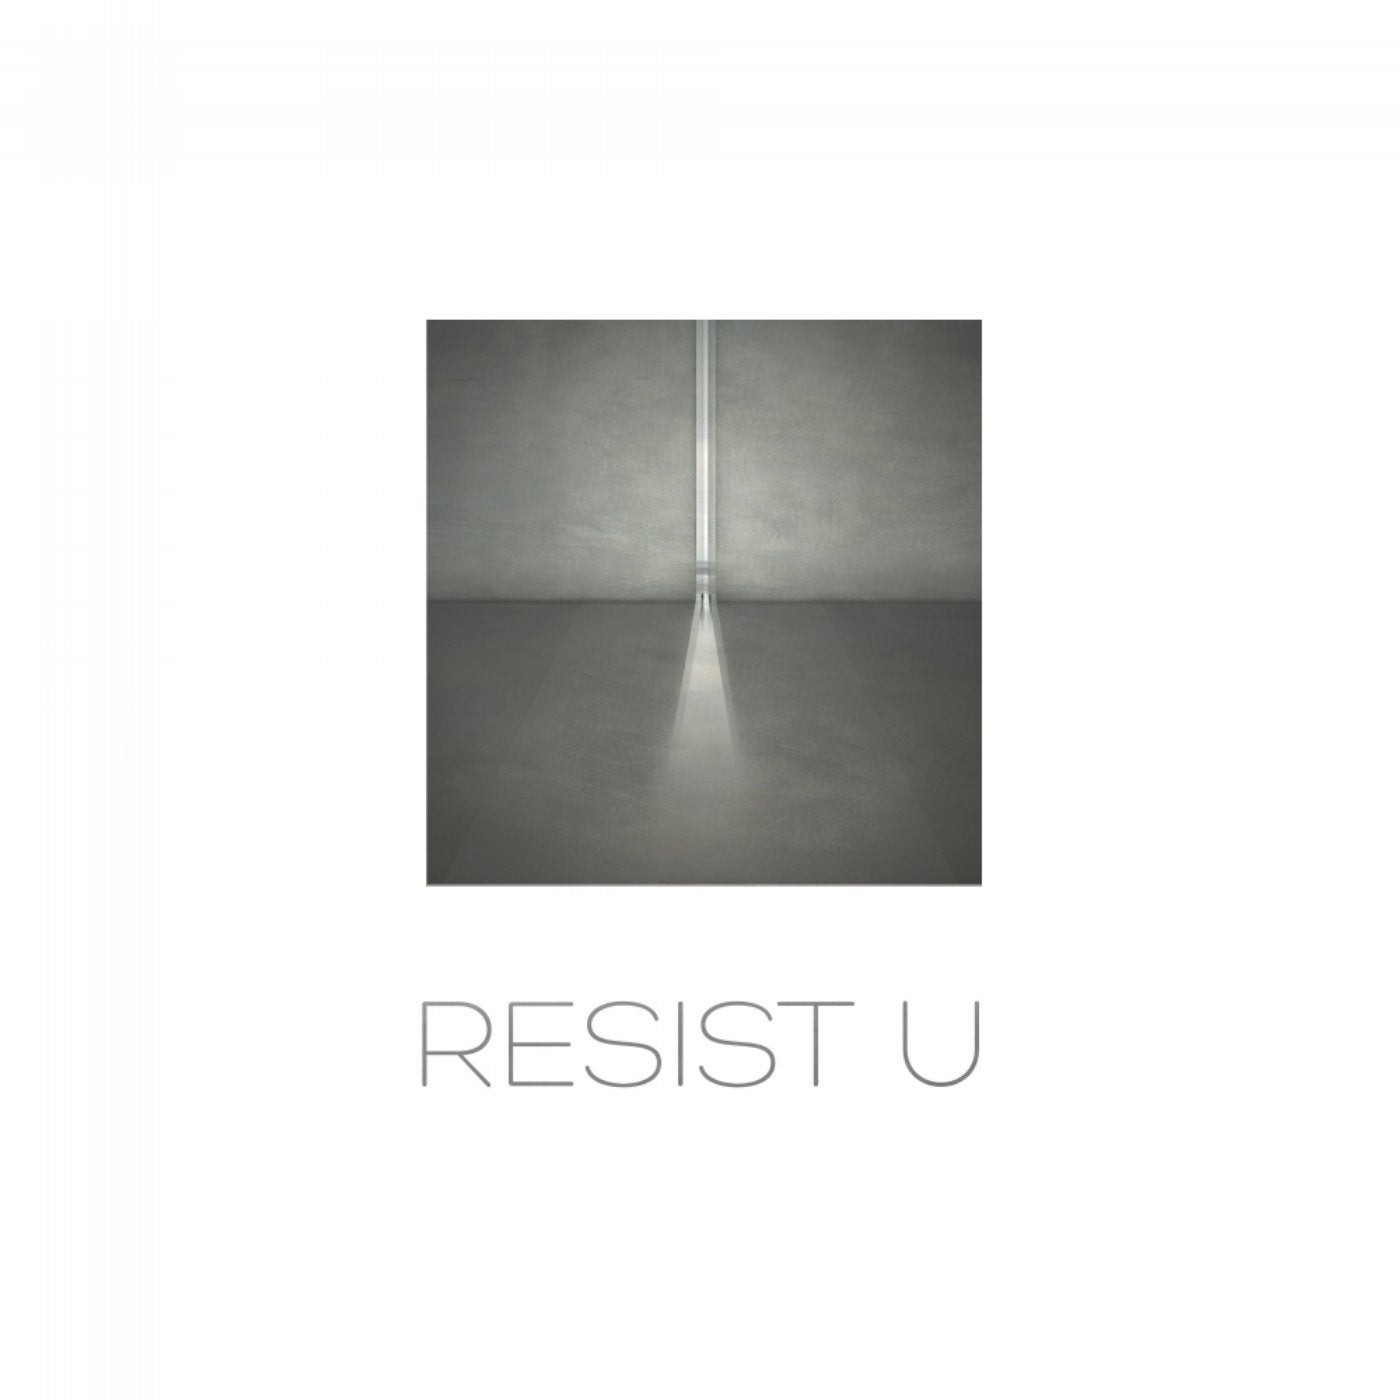 Resist U